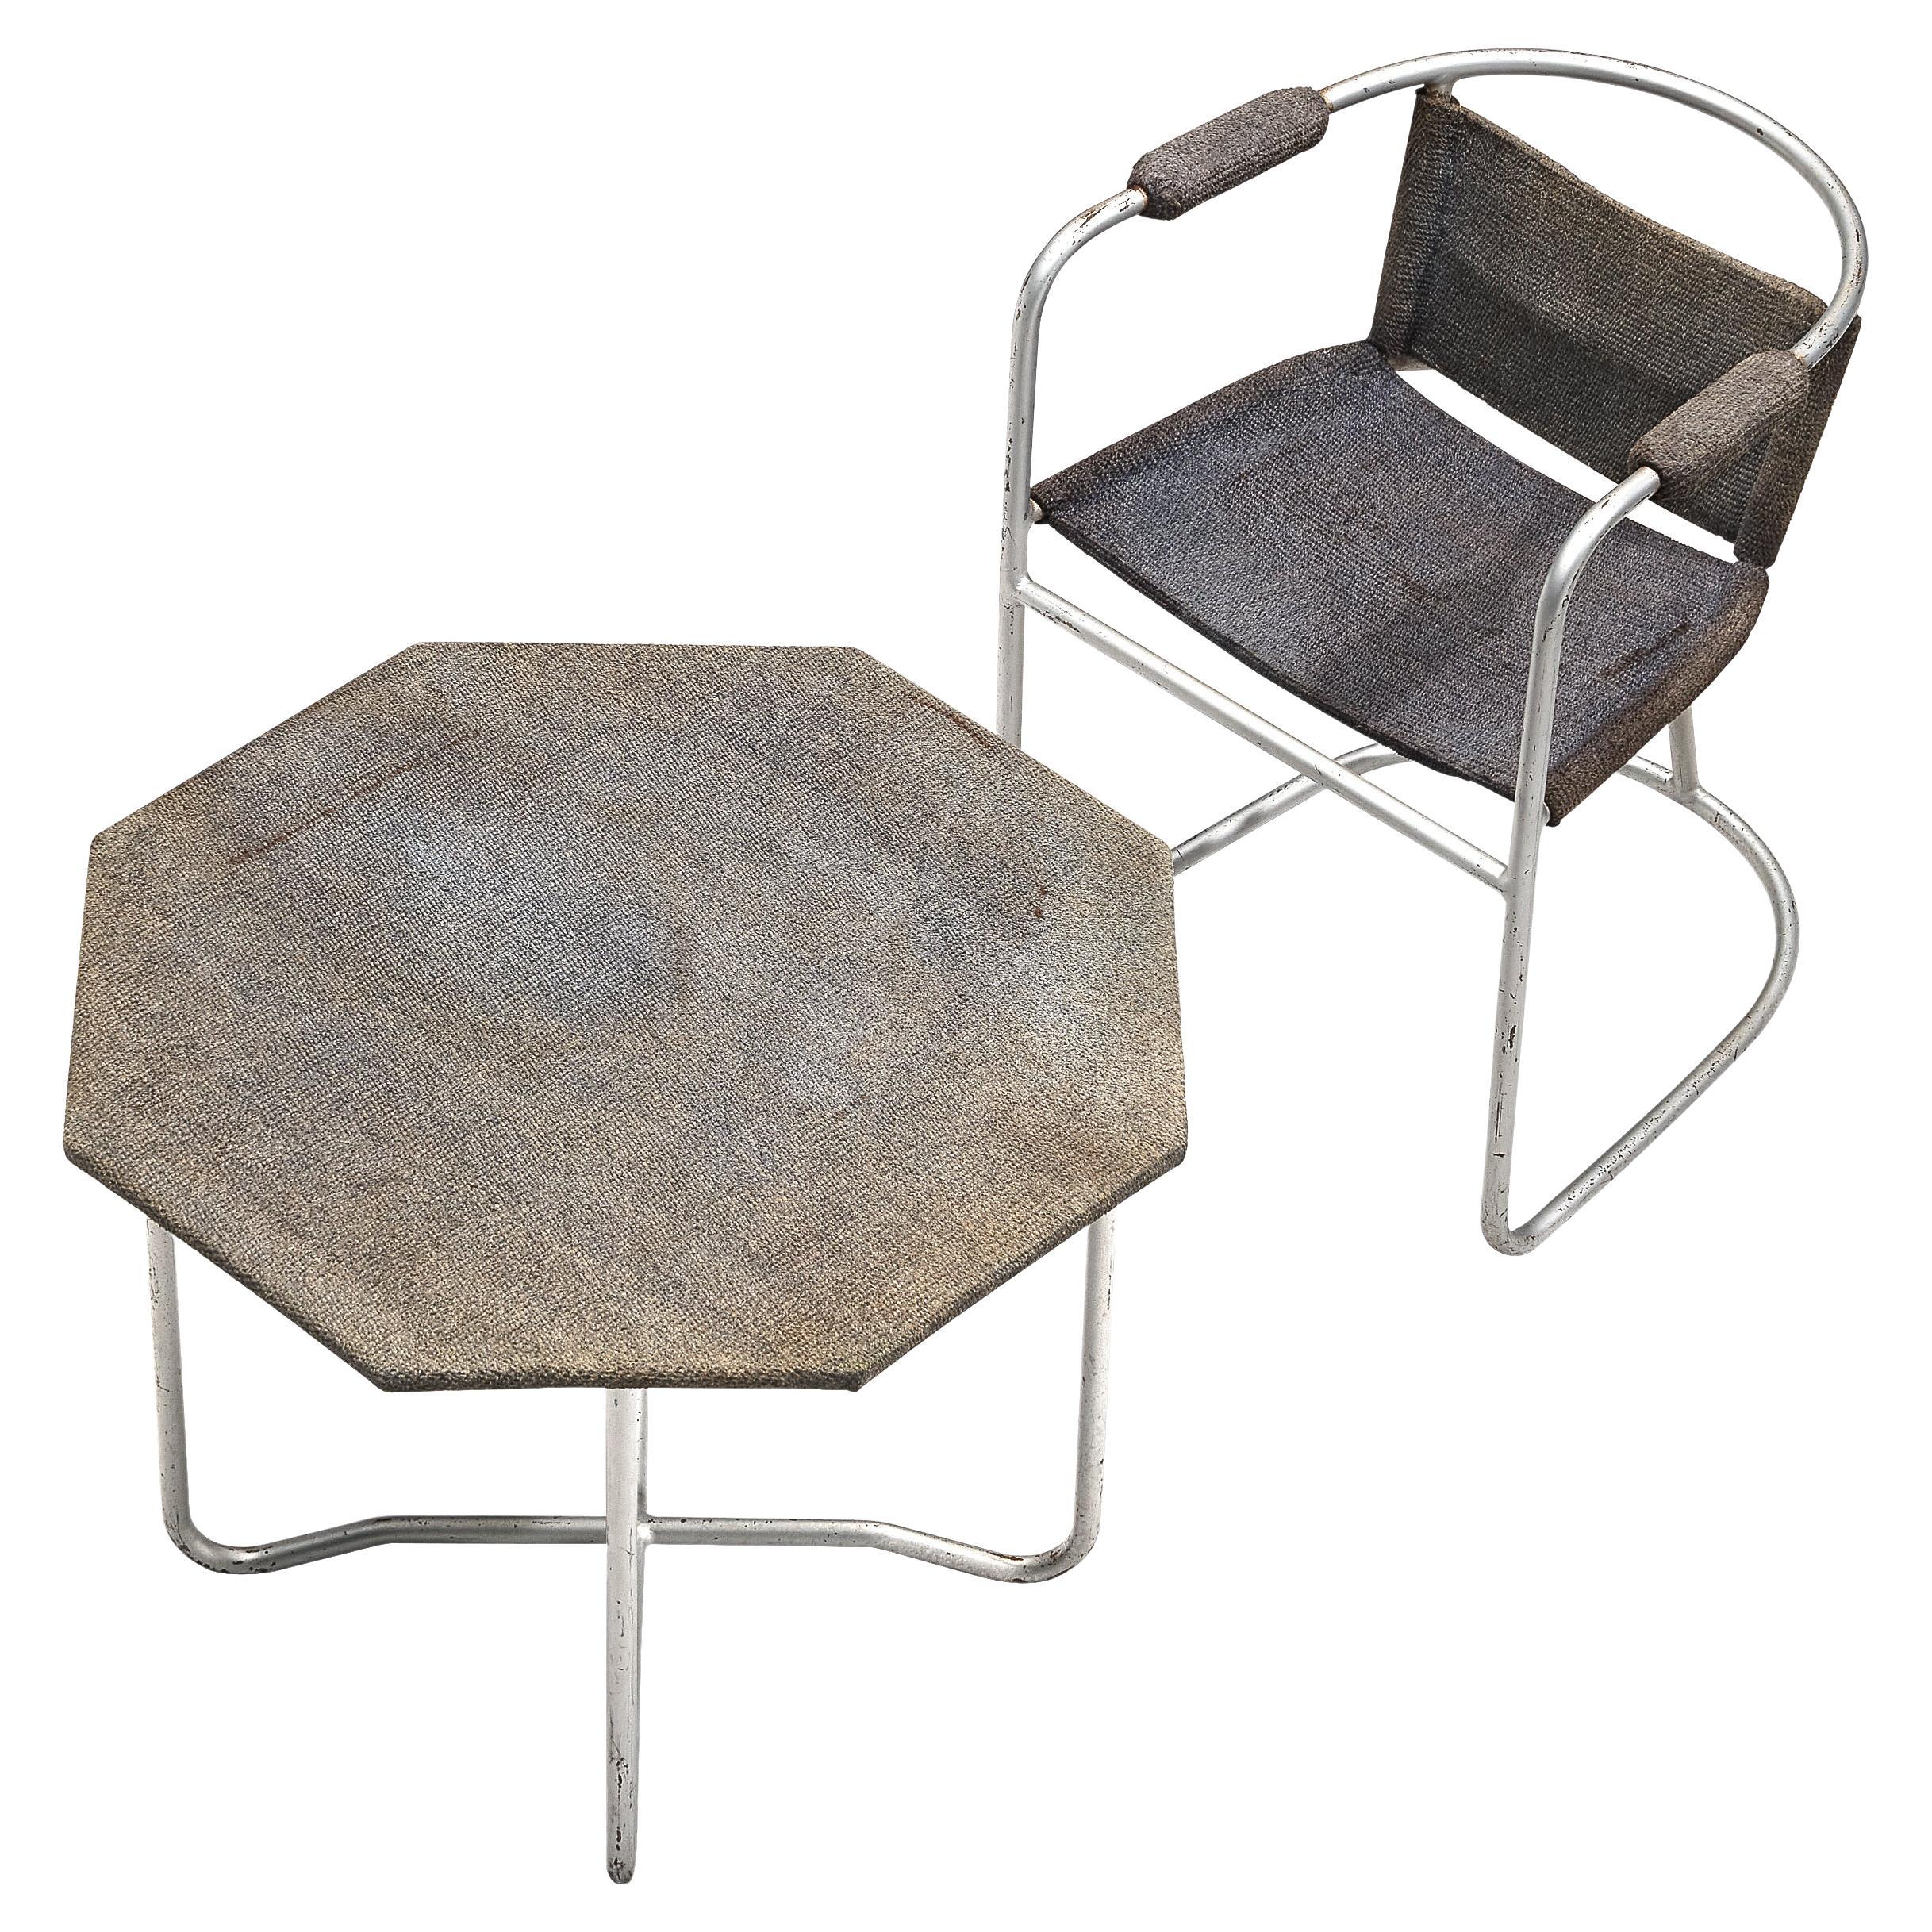 Bas van Pelt Patinated Armchair and Coffee Table in Metal and Original Sisal